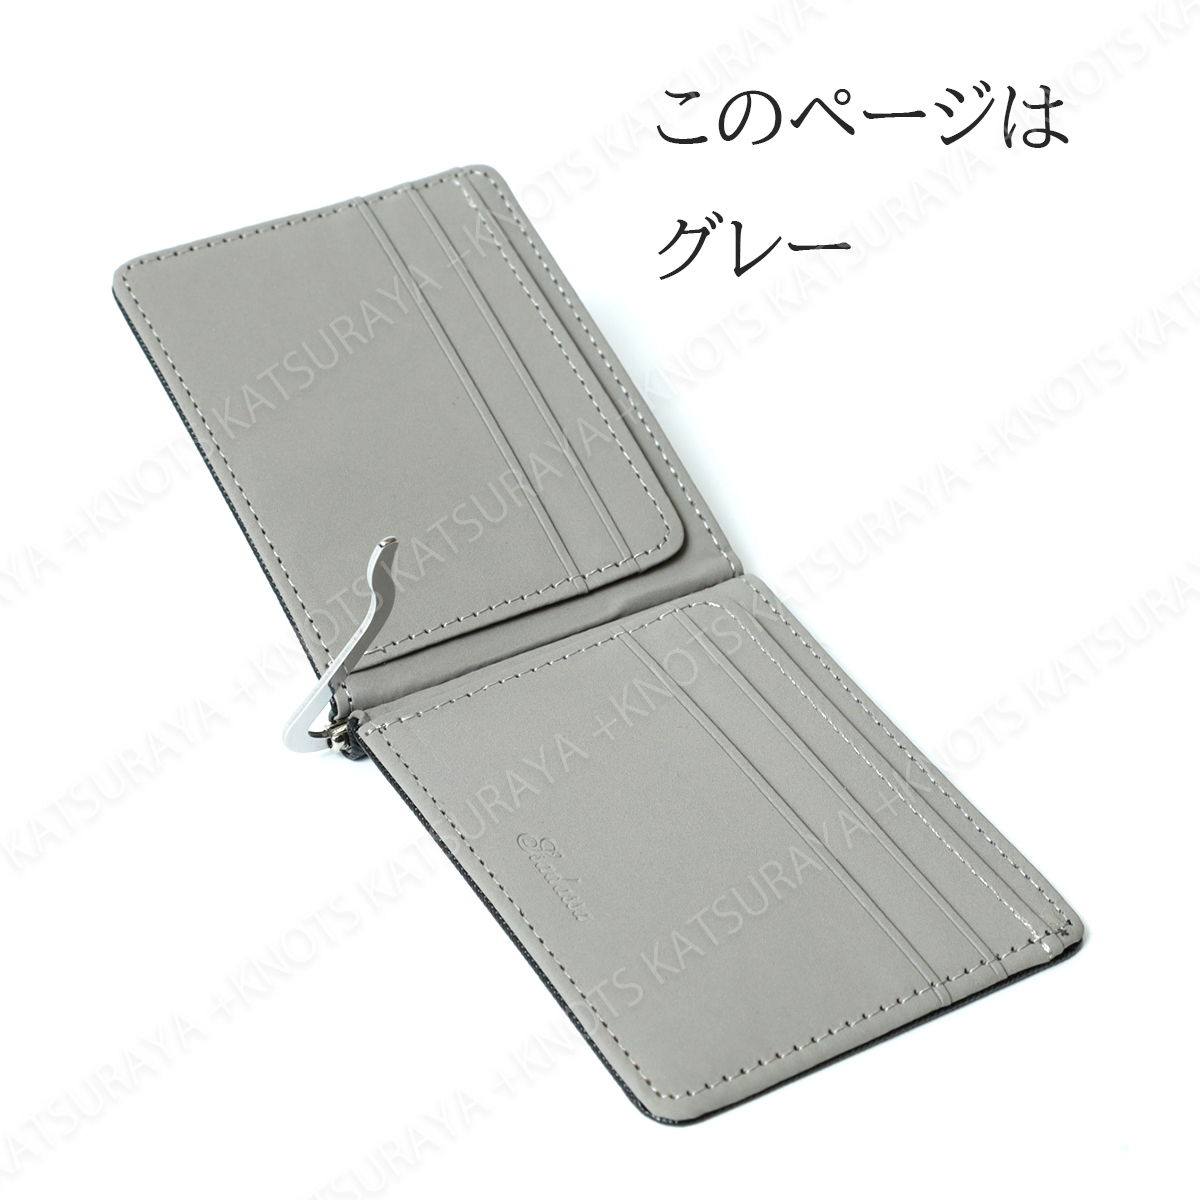 マネークリップ 財布 グレー メンズ 二つ折財布 ミニ財布 軽い 薄い 薄型 メンズ シンプル スリム 小型 小さめ 小さい レザー_画像8